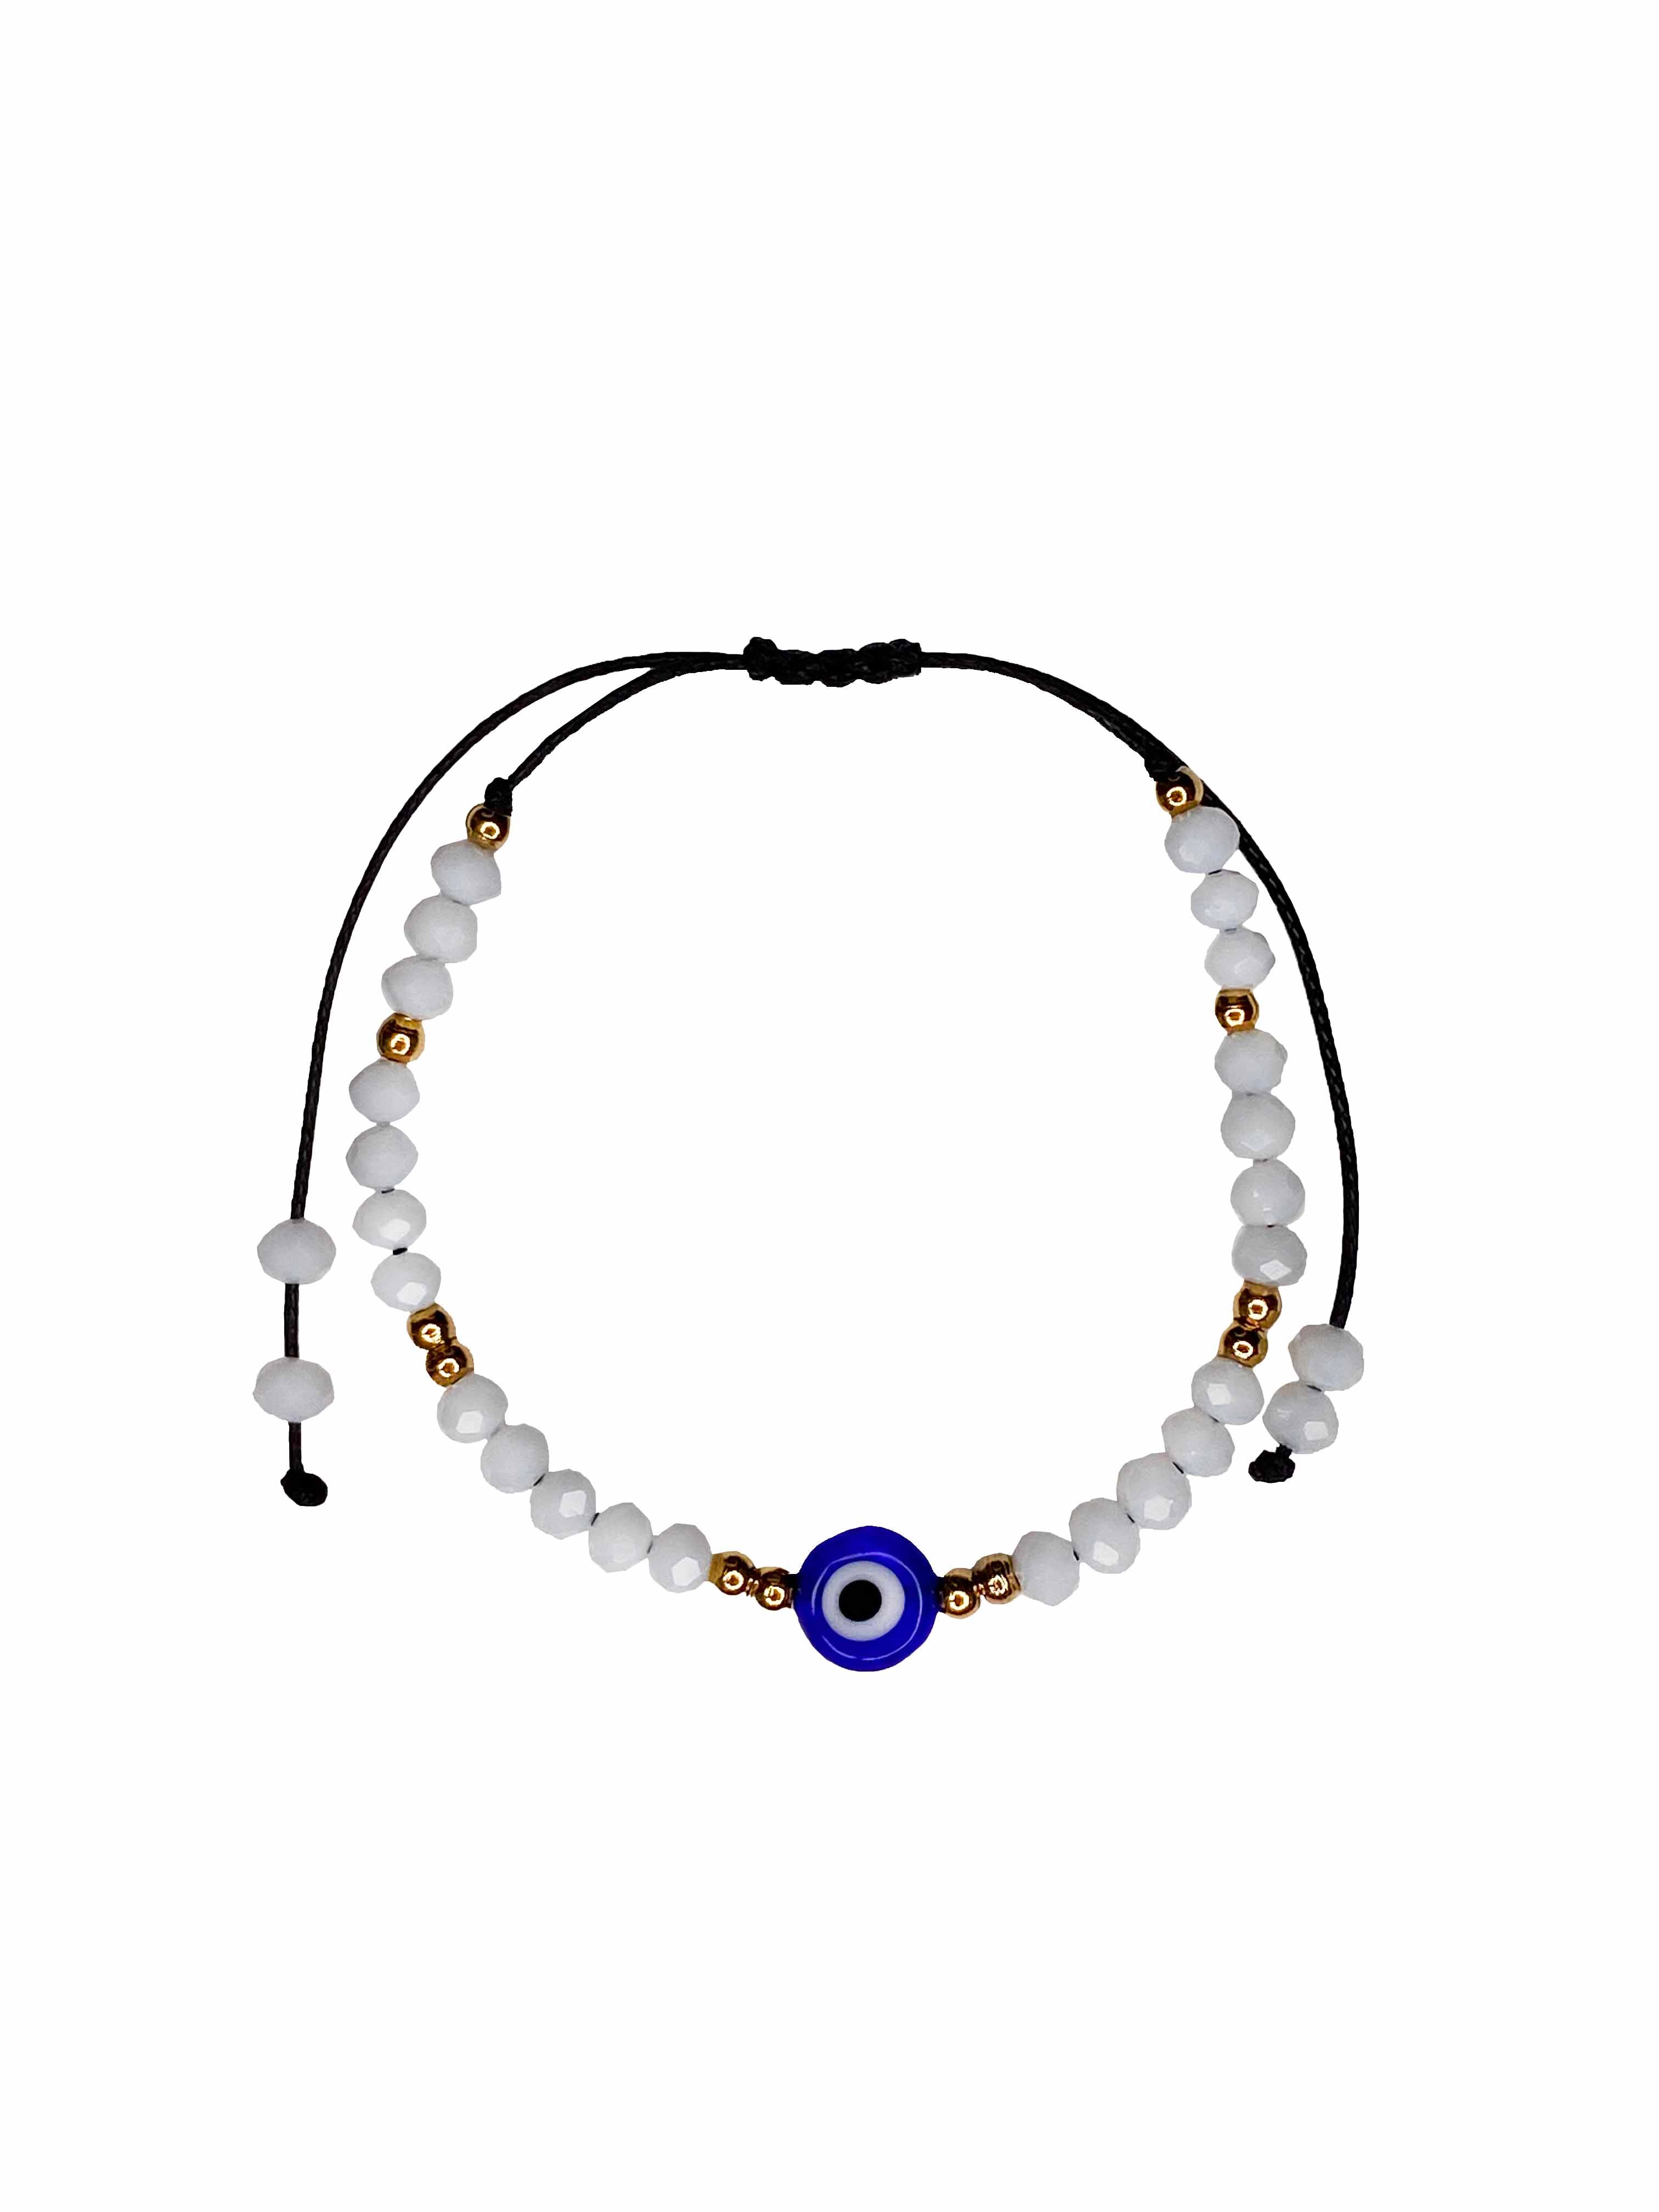 Buy Evil Eye Bracelet / Nazar Bracelet / Gold Plated Wheat Chain Bracelet  /toggle Bracelet / Evil Eye Gold Chain / Protection / Gift for Her Online  in India - Etsy